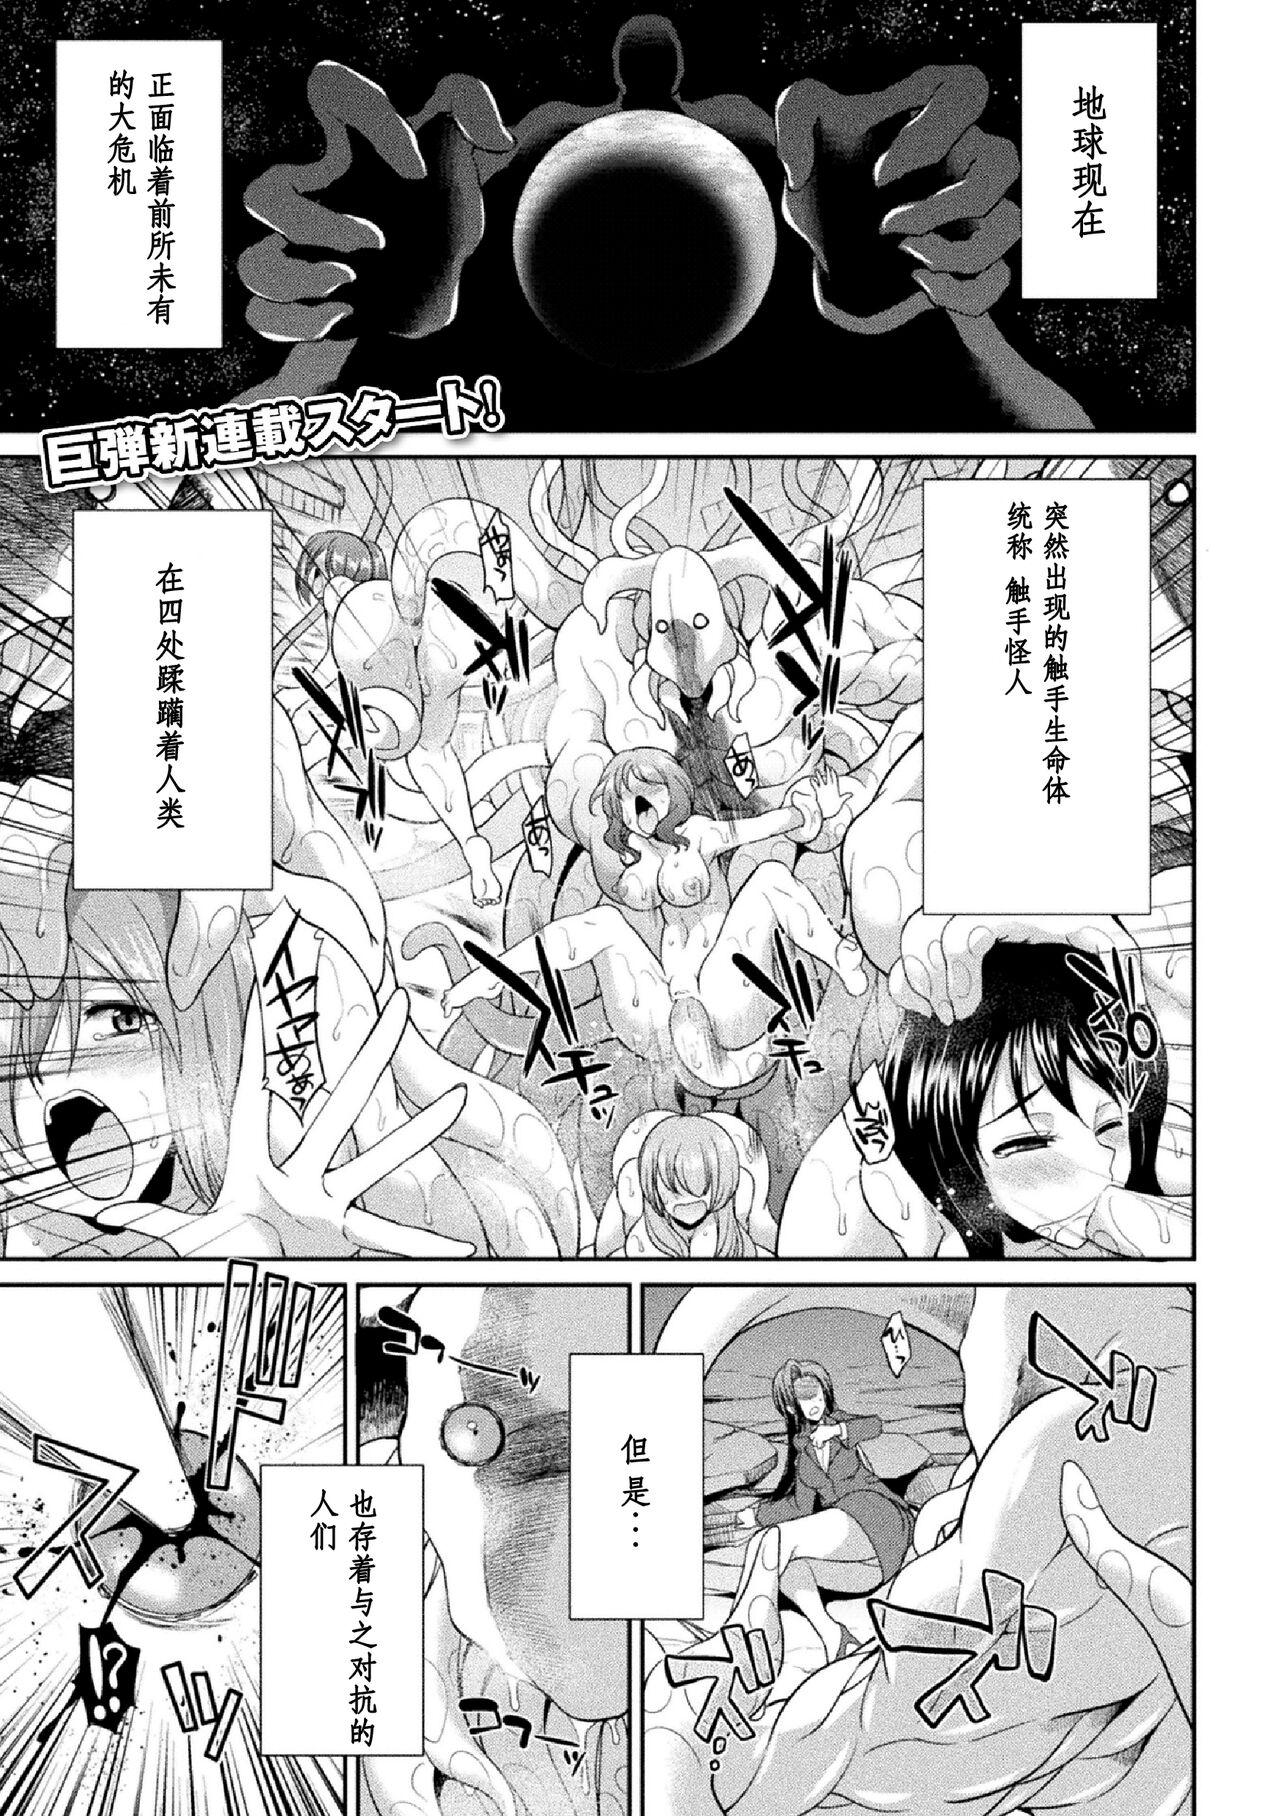 Cei Tokumu Sentai Colorful Force Seigi no Heroine vs Shokushu Joou! Futanari Choukyou Daikessen!? Indoor - Page 5